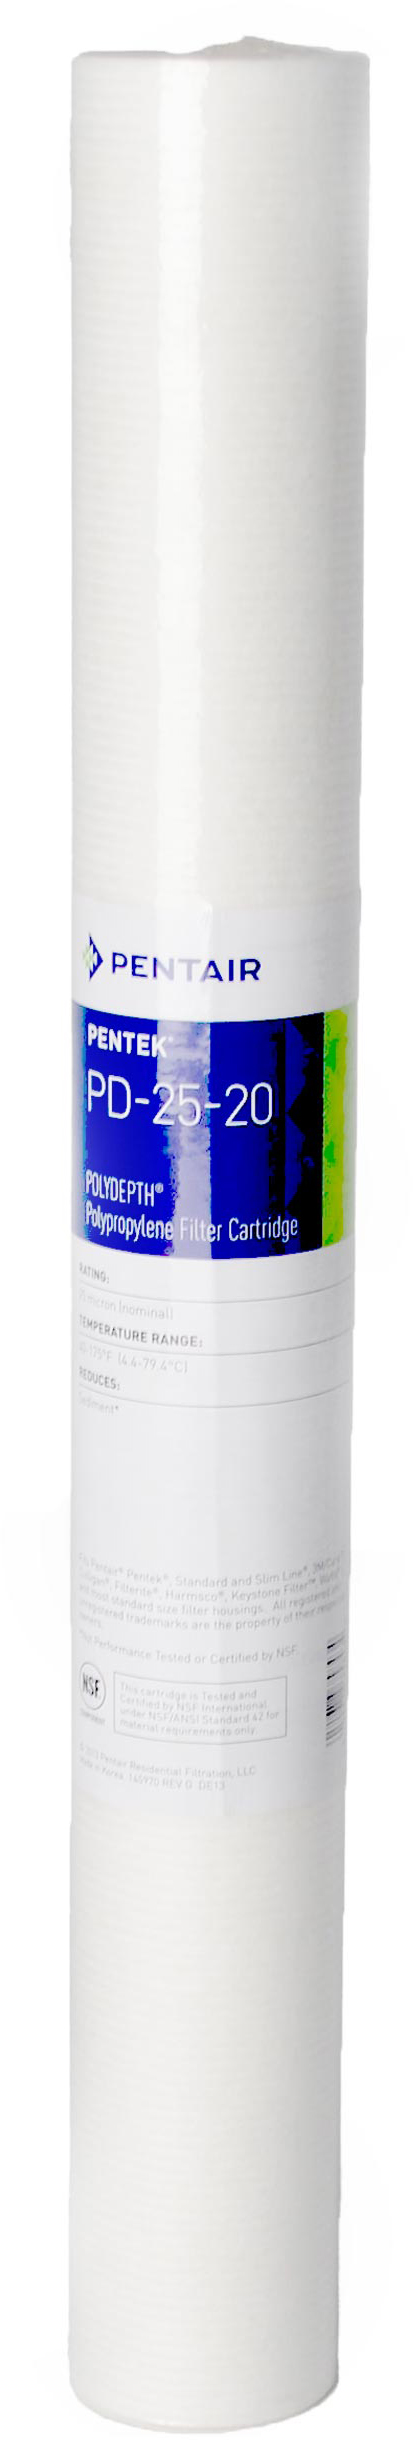 Картридж для горячей воды Pentek PD-5-20 Polydepth (155756-43)